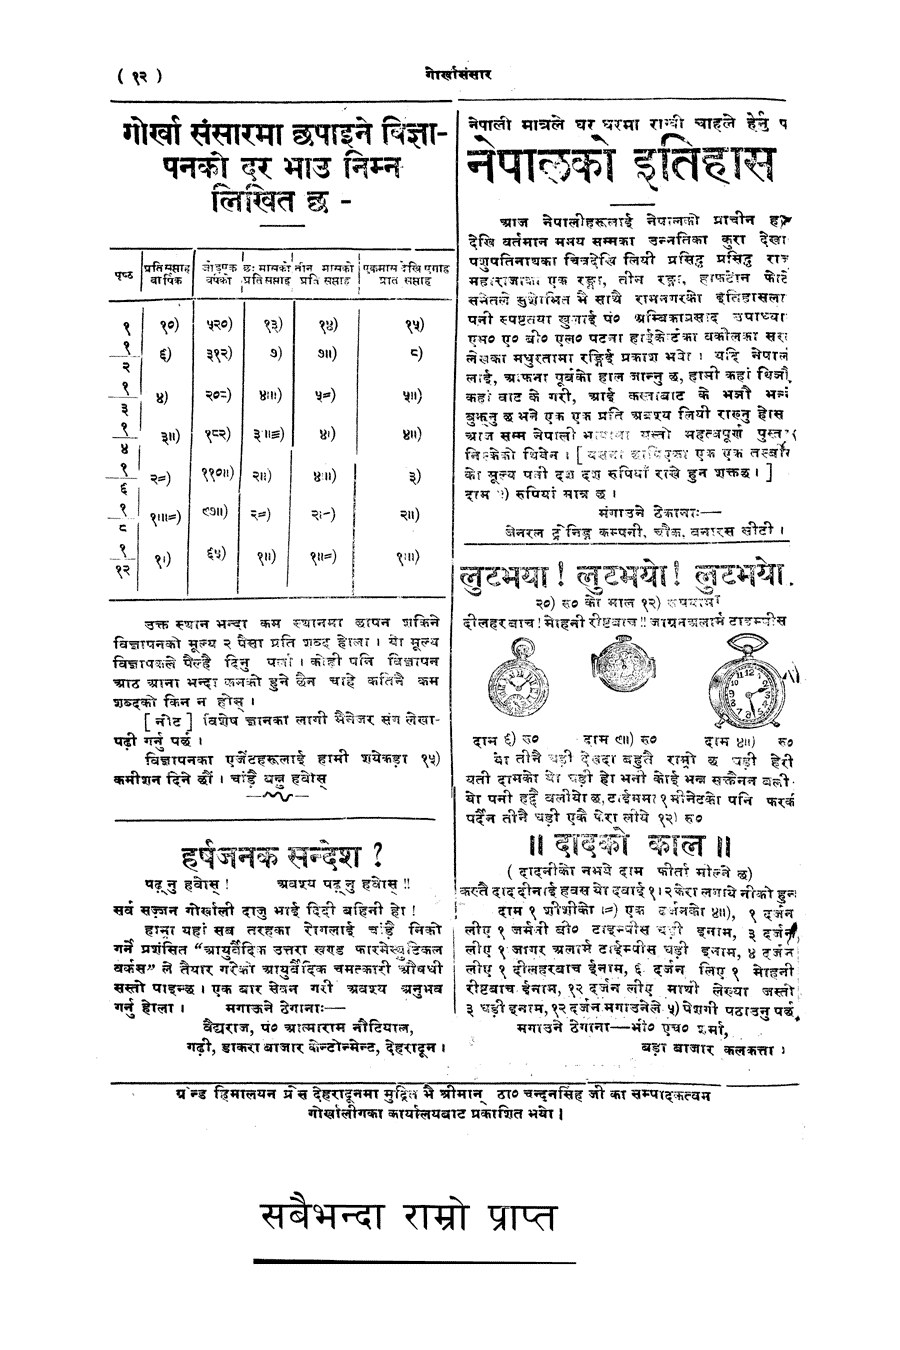 Gorkha Sansar, 7 Feb 1928, page 12